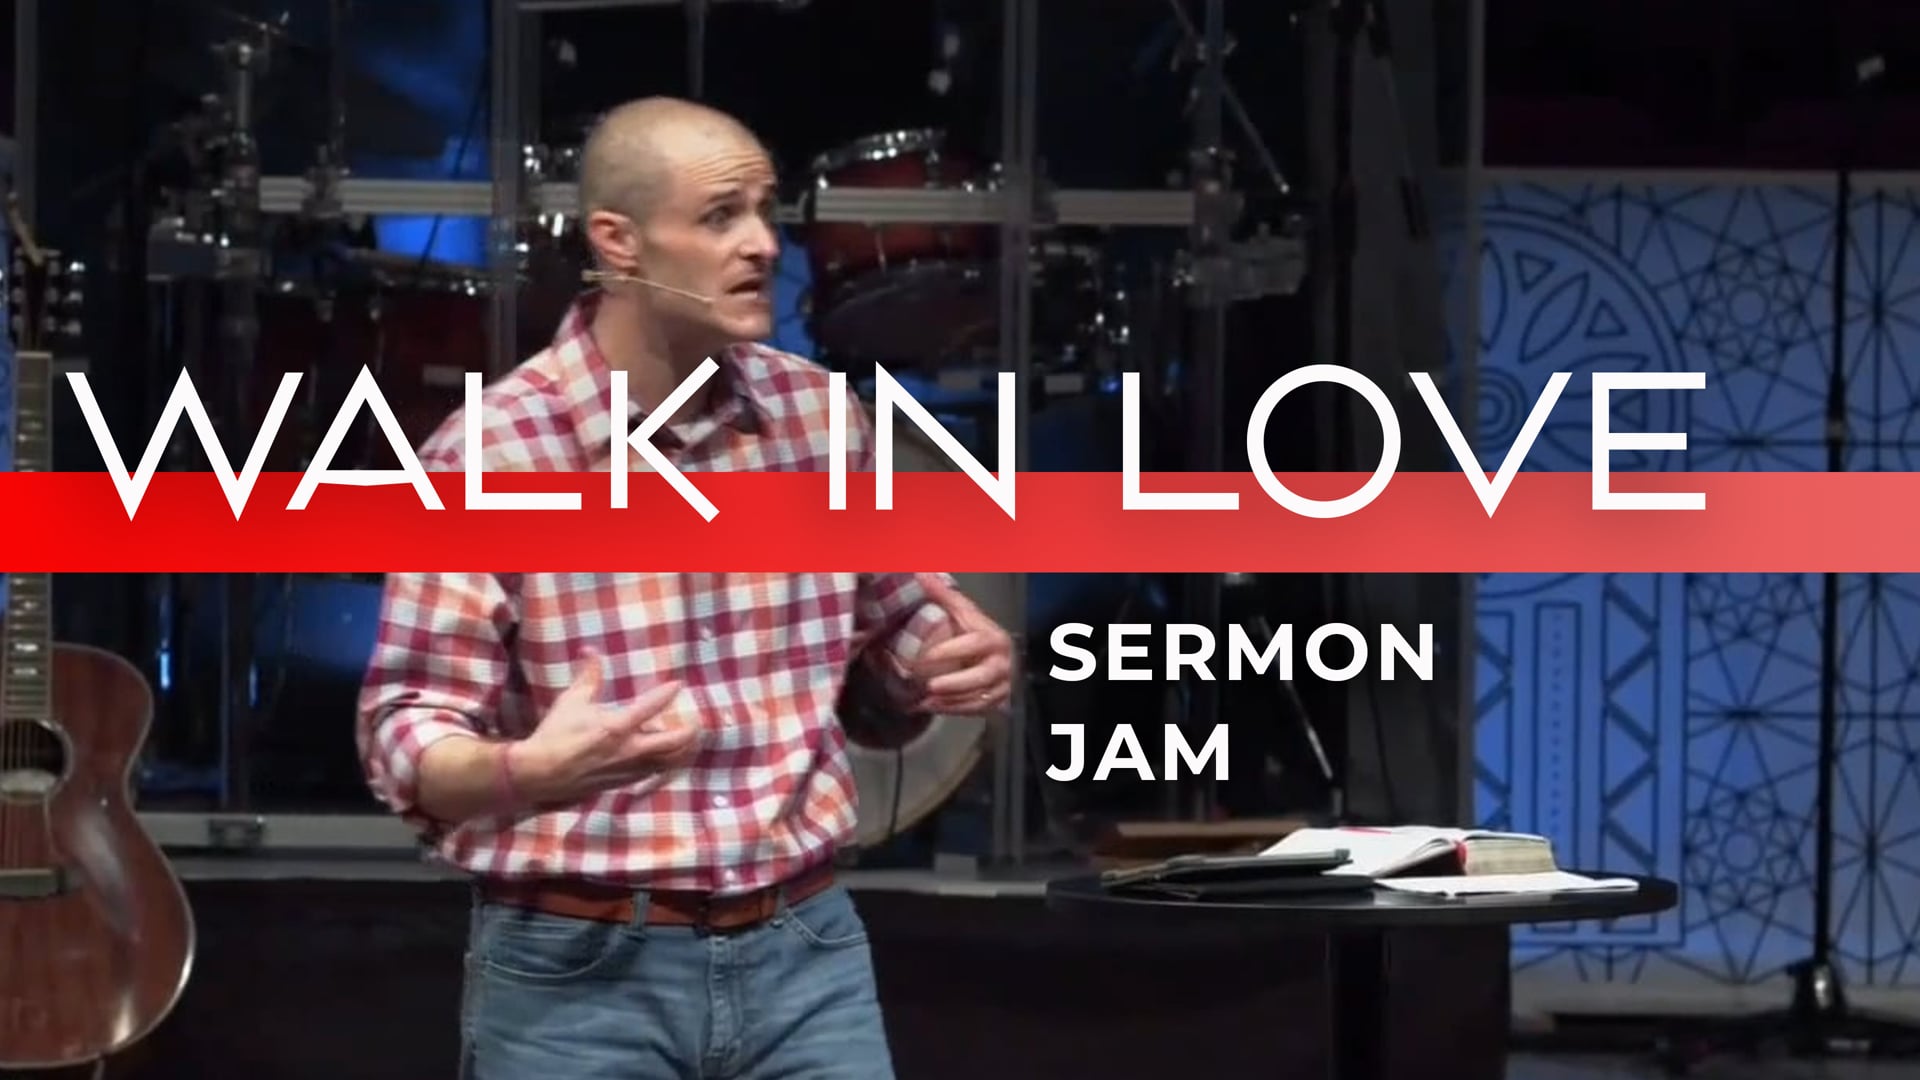 Walk In Love Sermon Jam